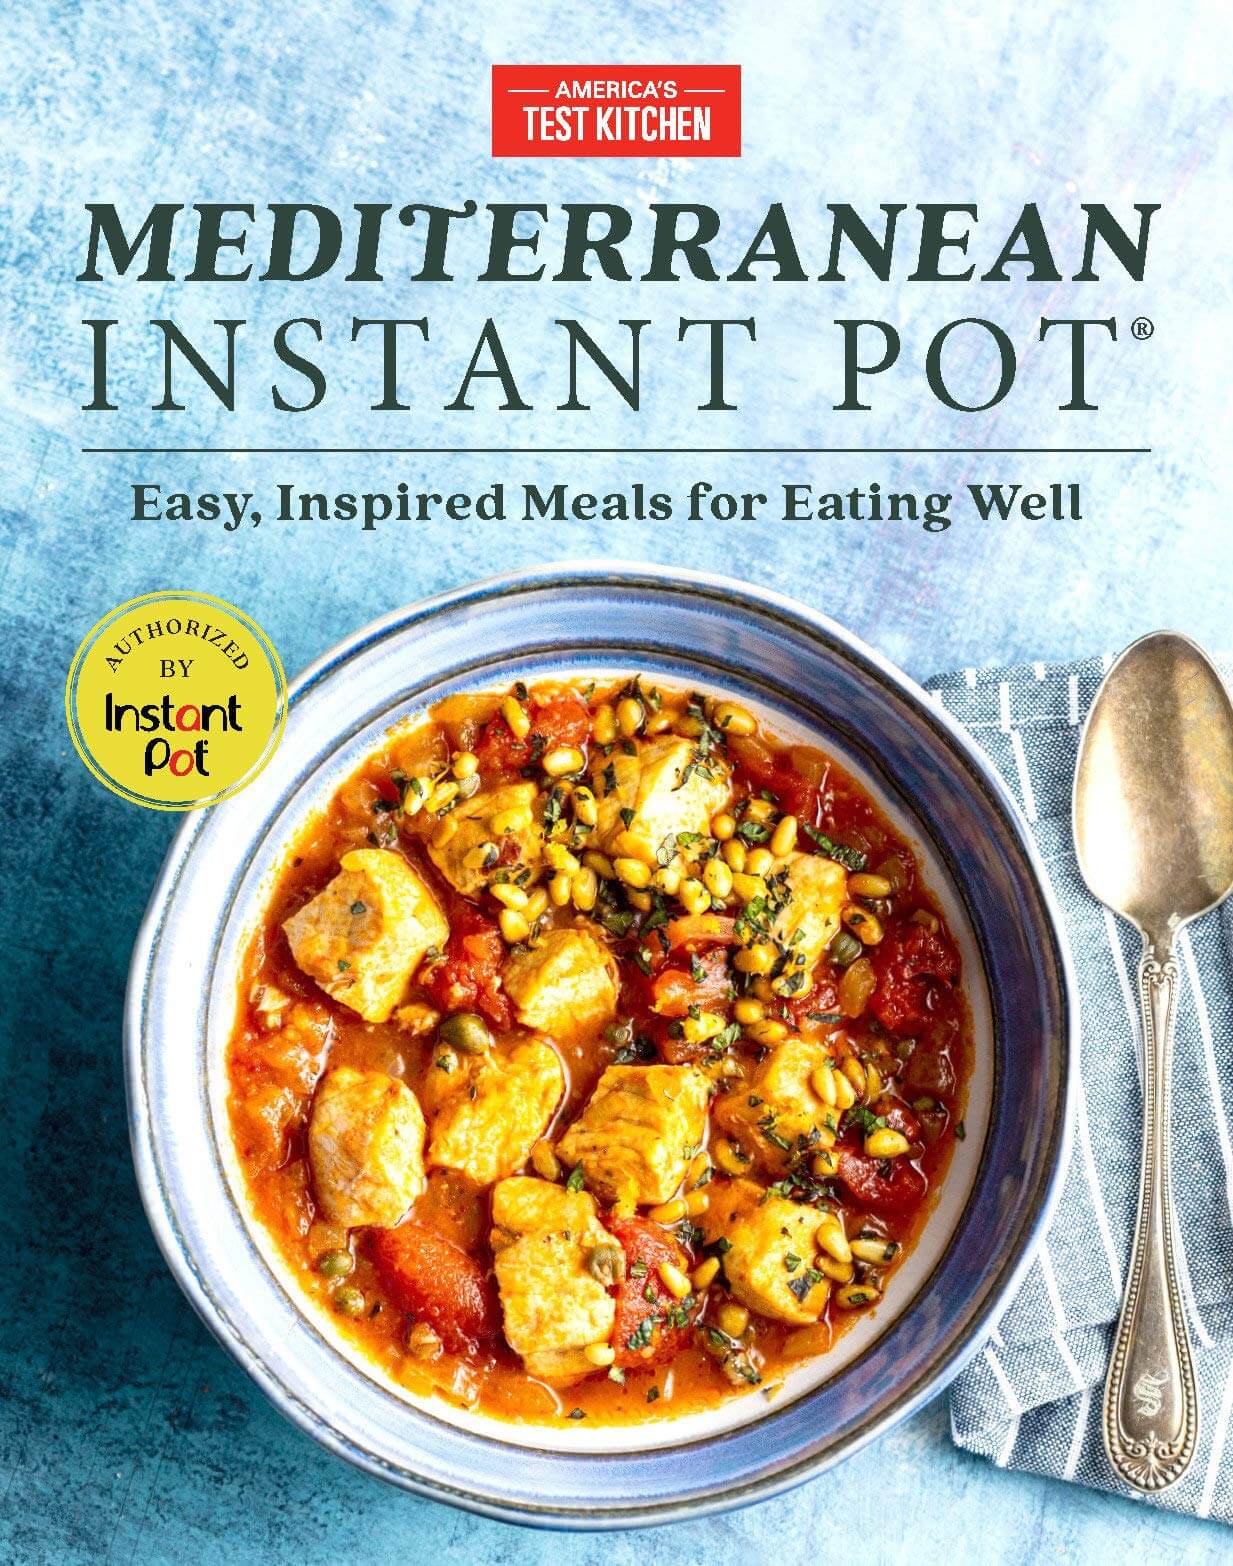 "Mediterranean Instant Pot" by America’s Test Kitchen